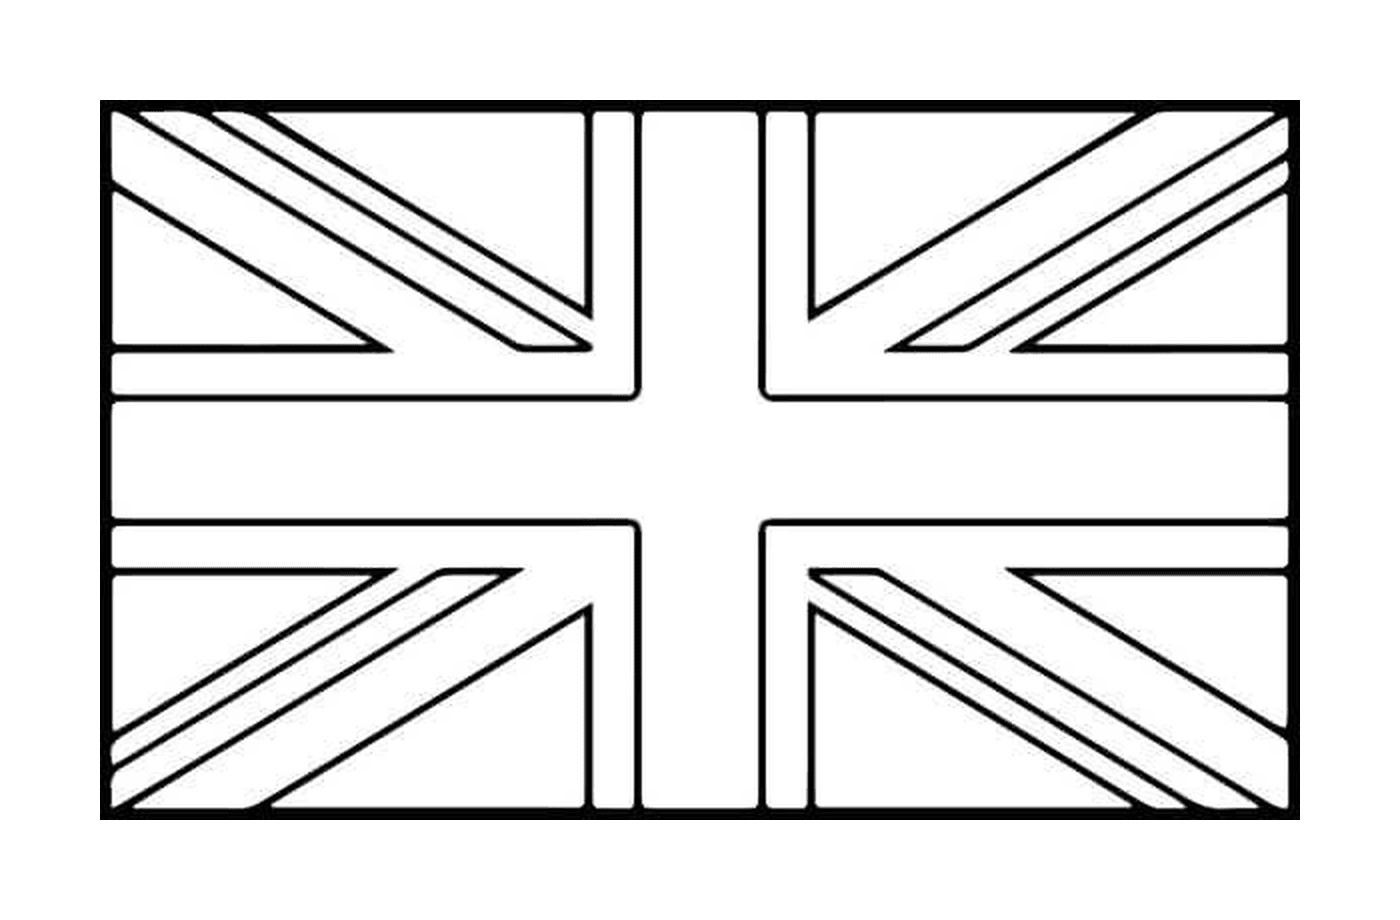  A British Flag 